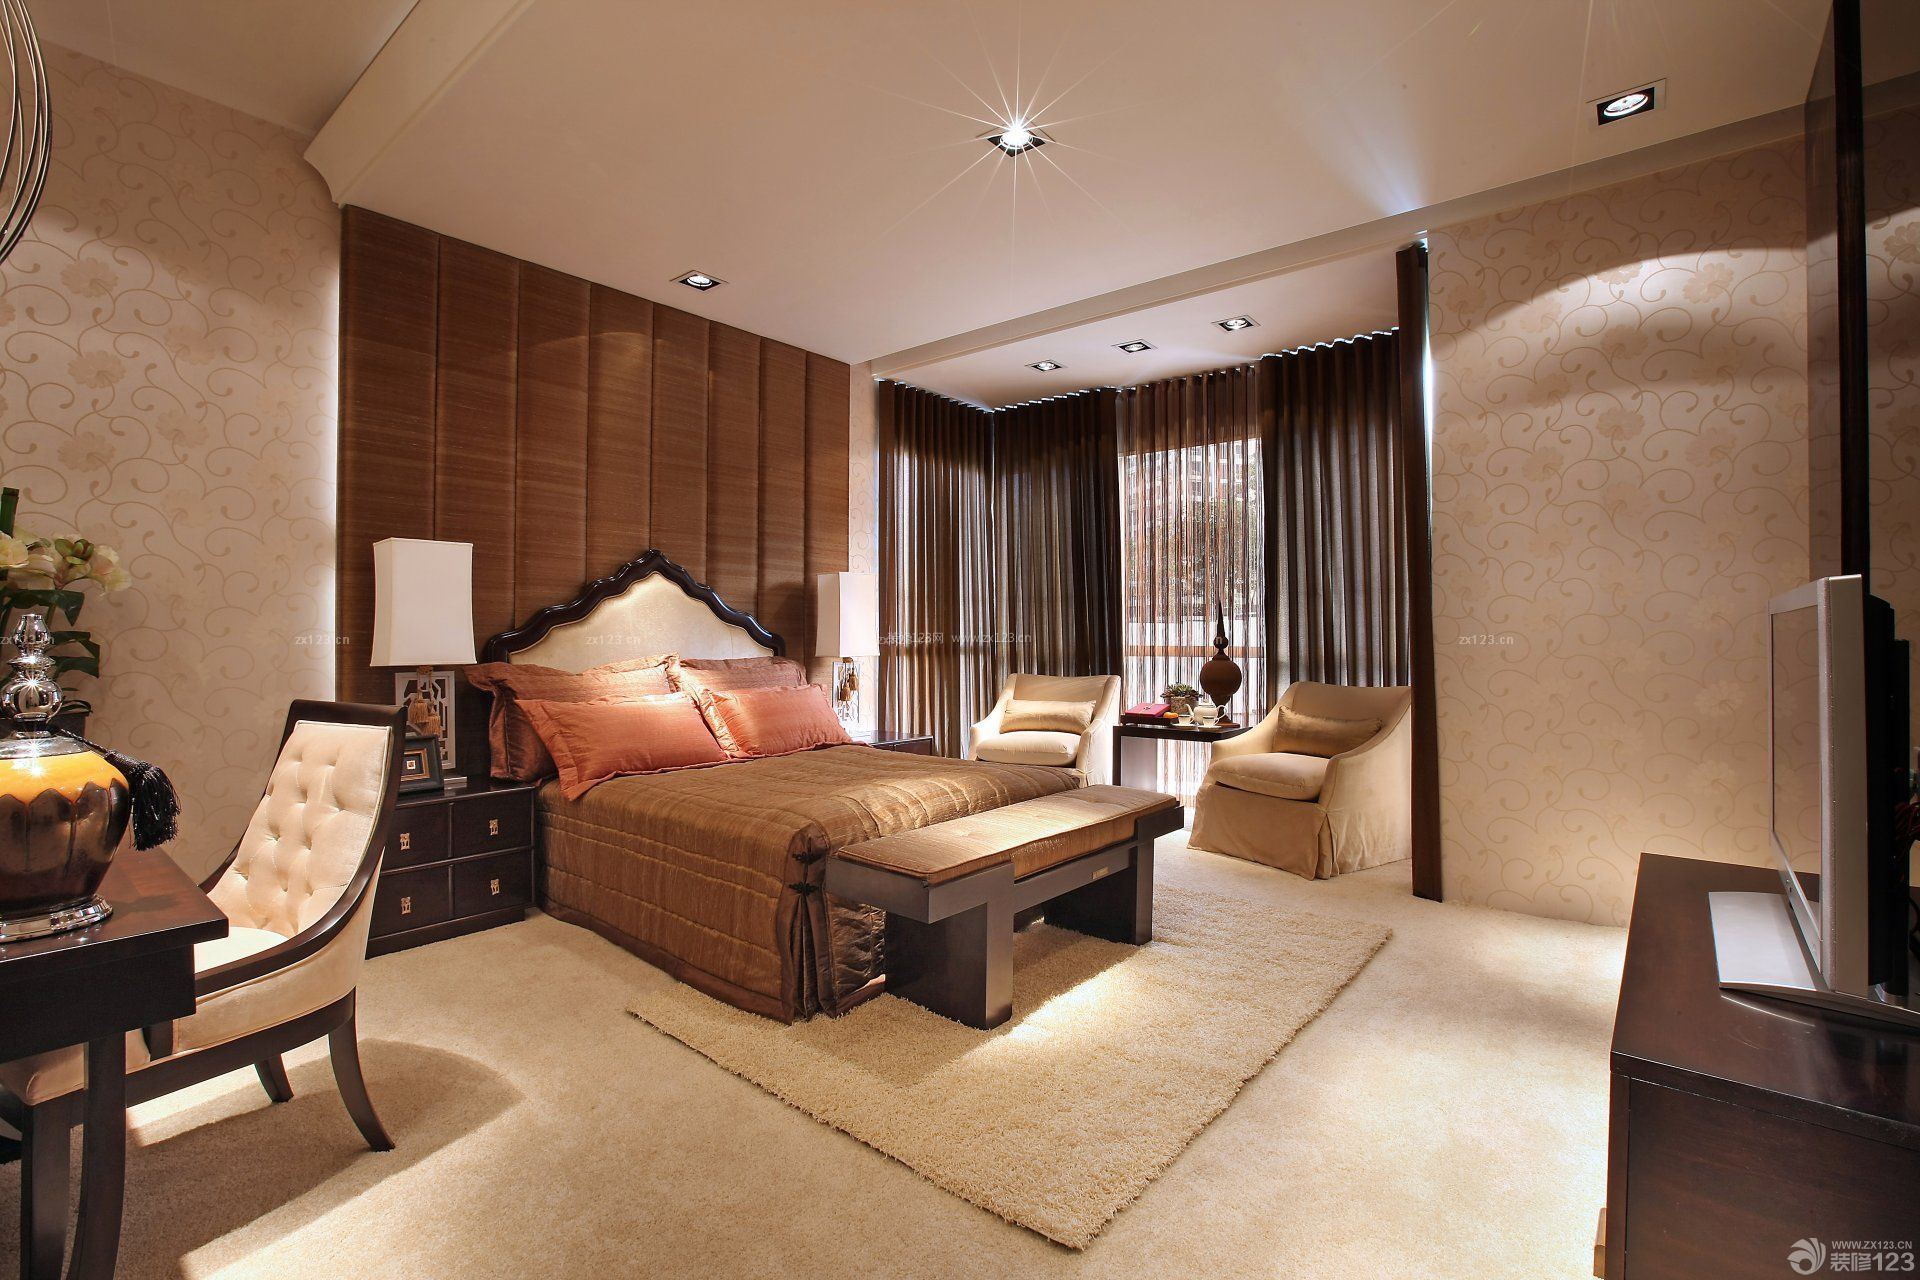 170平米东南亚风格新房卧室装修效果图